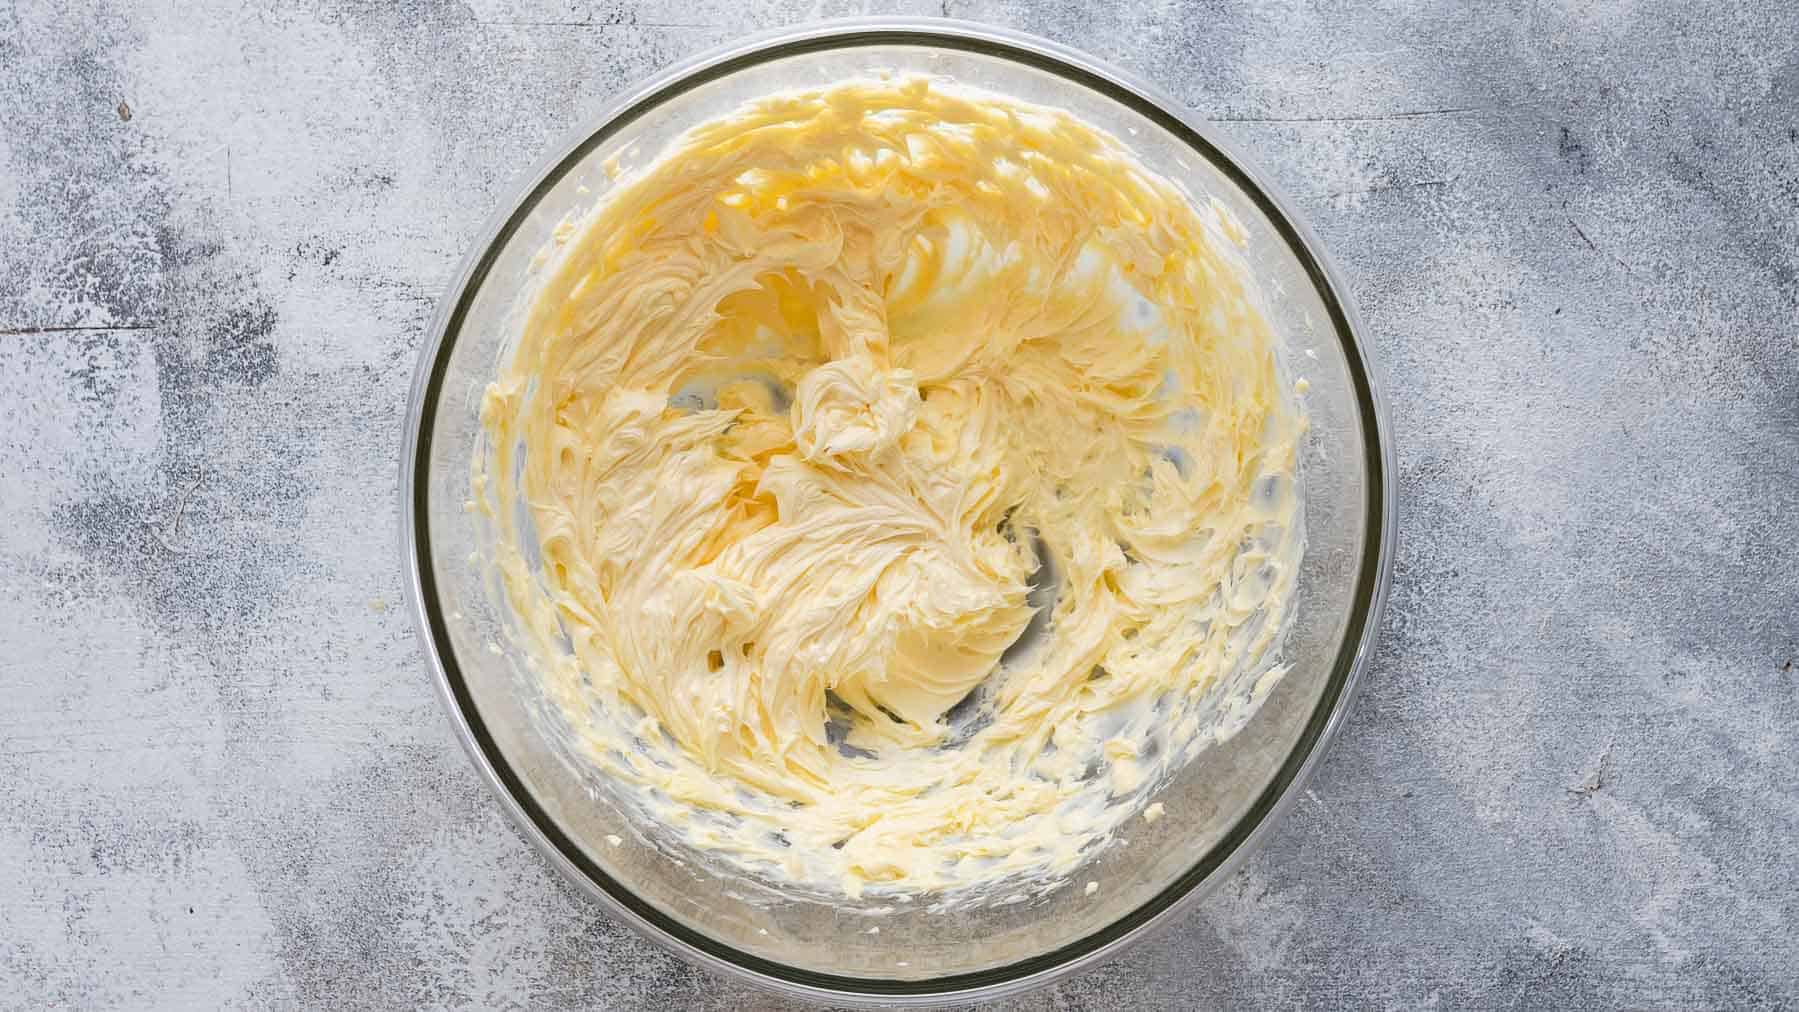 beaten butter in a glass bowl